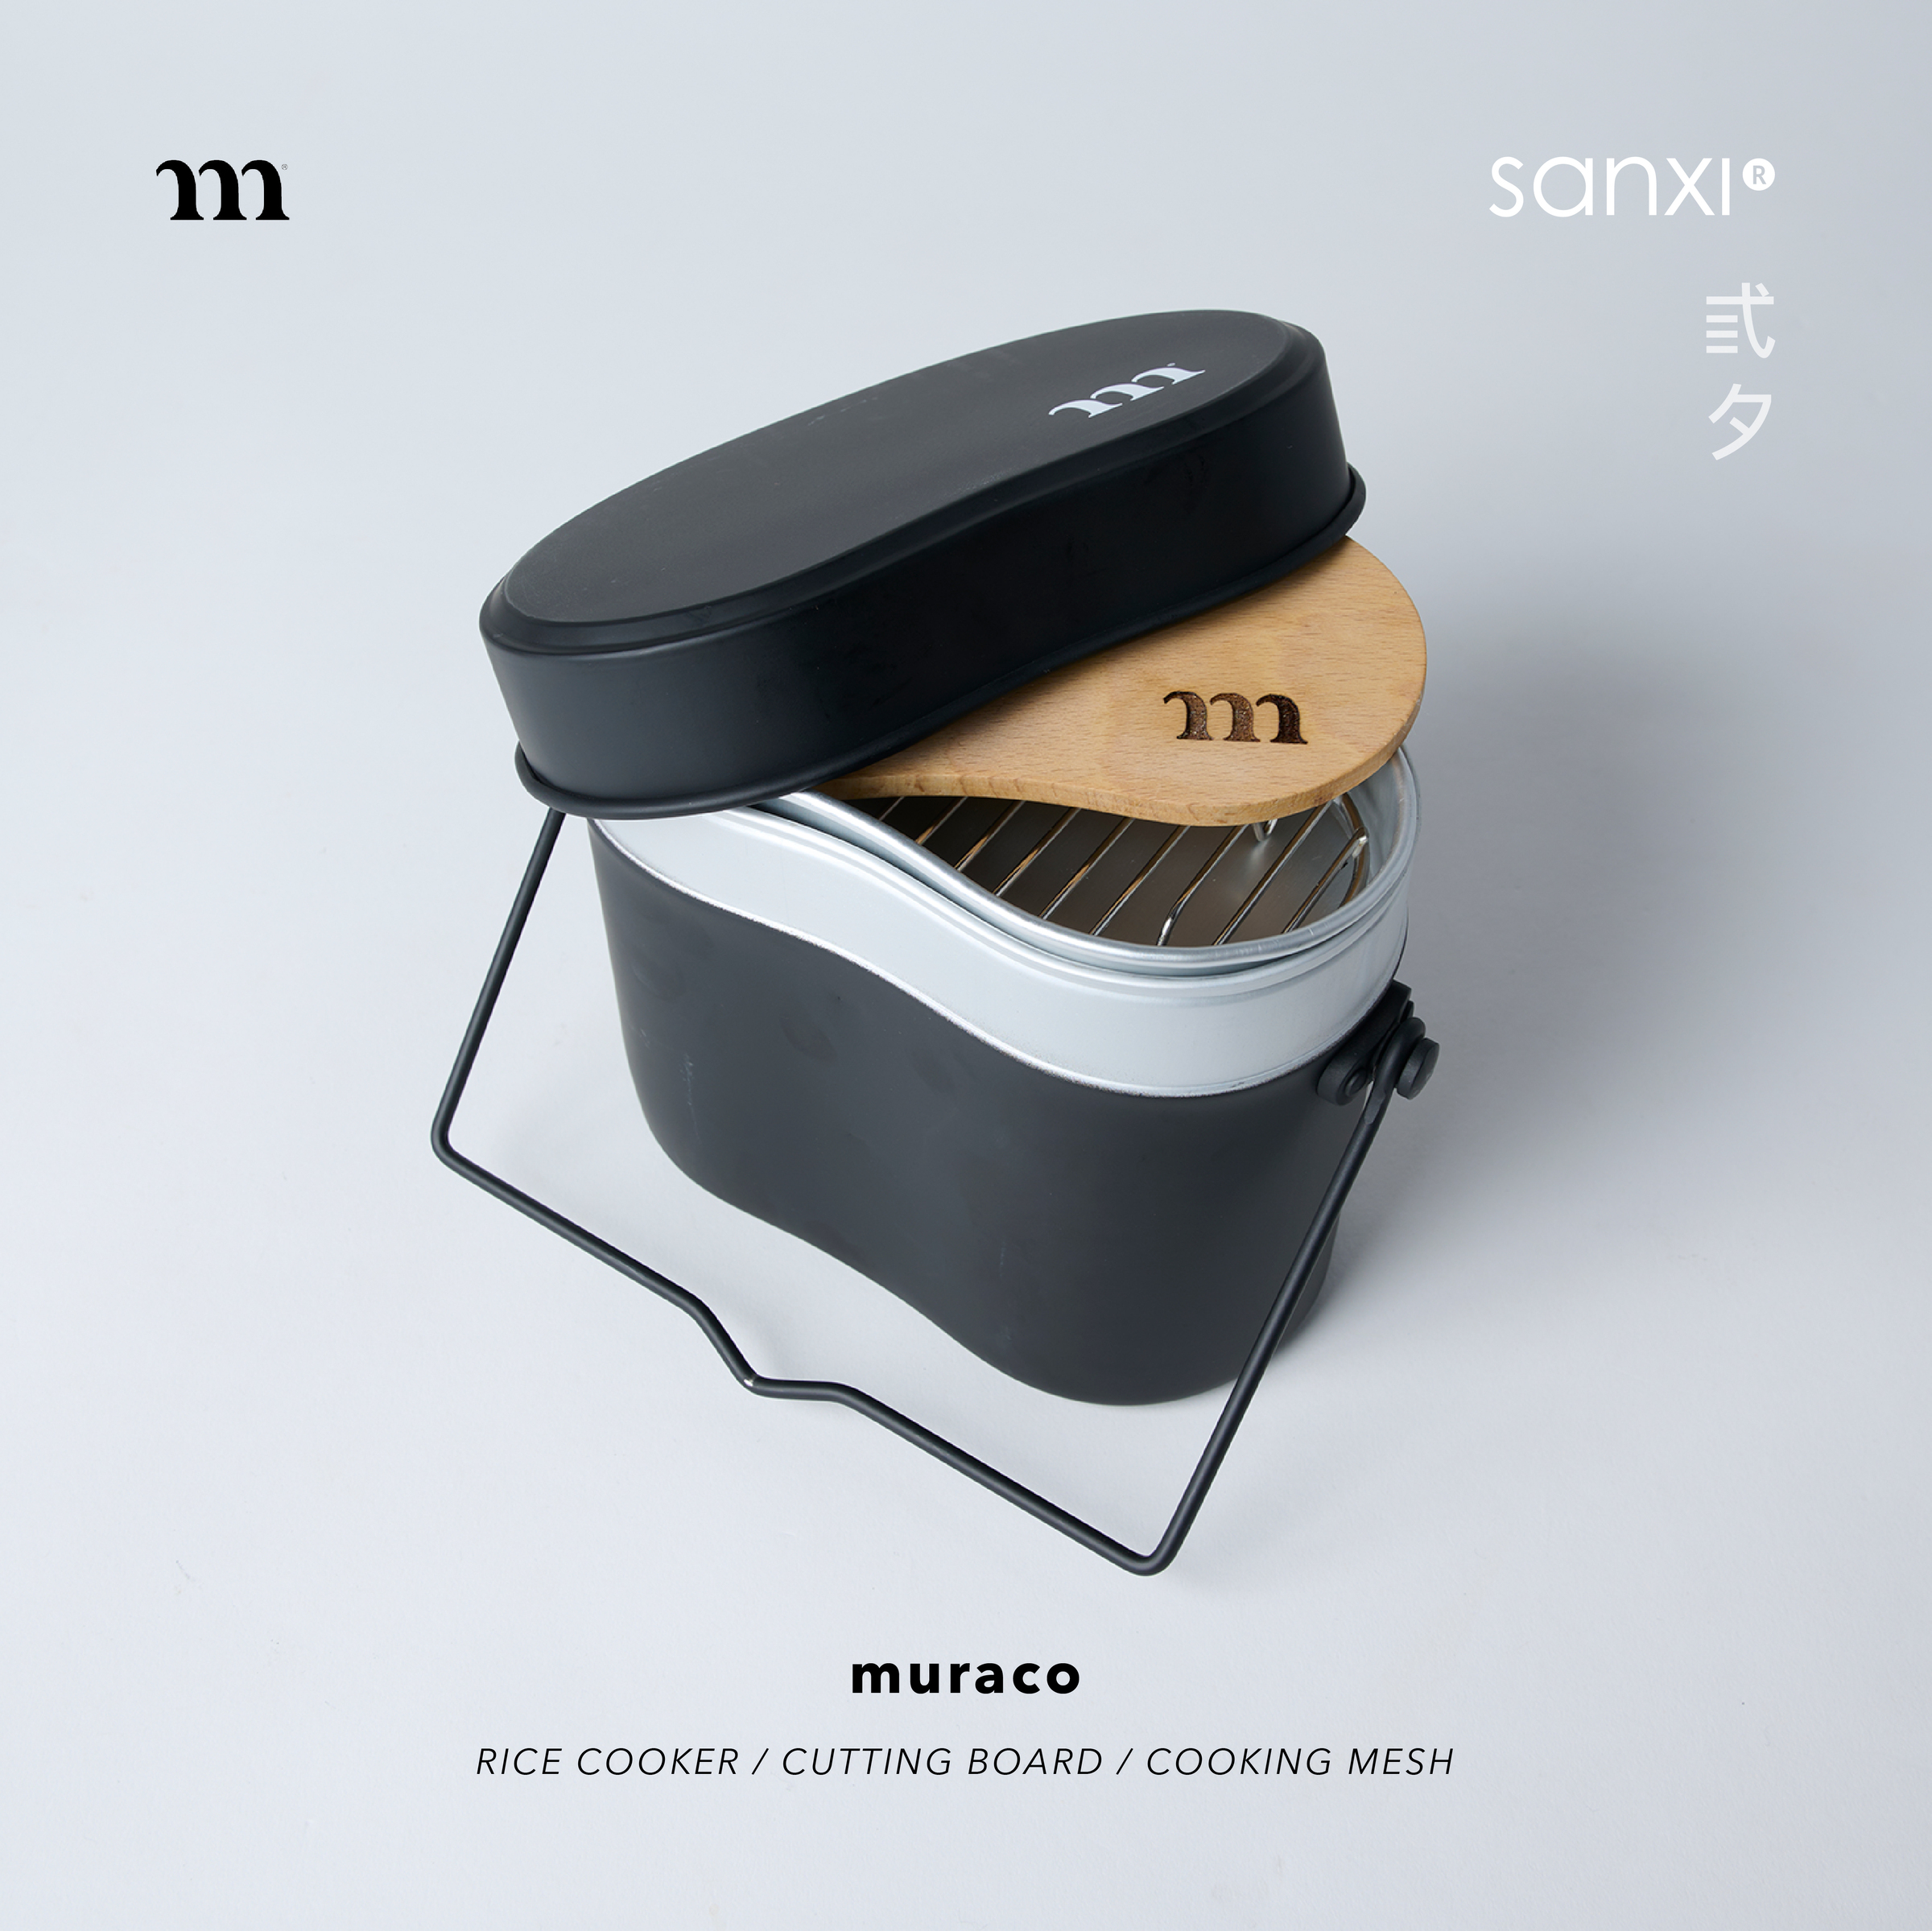 SANXI_商品圖｜Muraco_muraco RICE COOKER - CUTTING BOARD - COOKING MESH